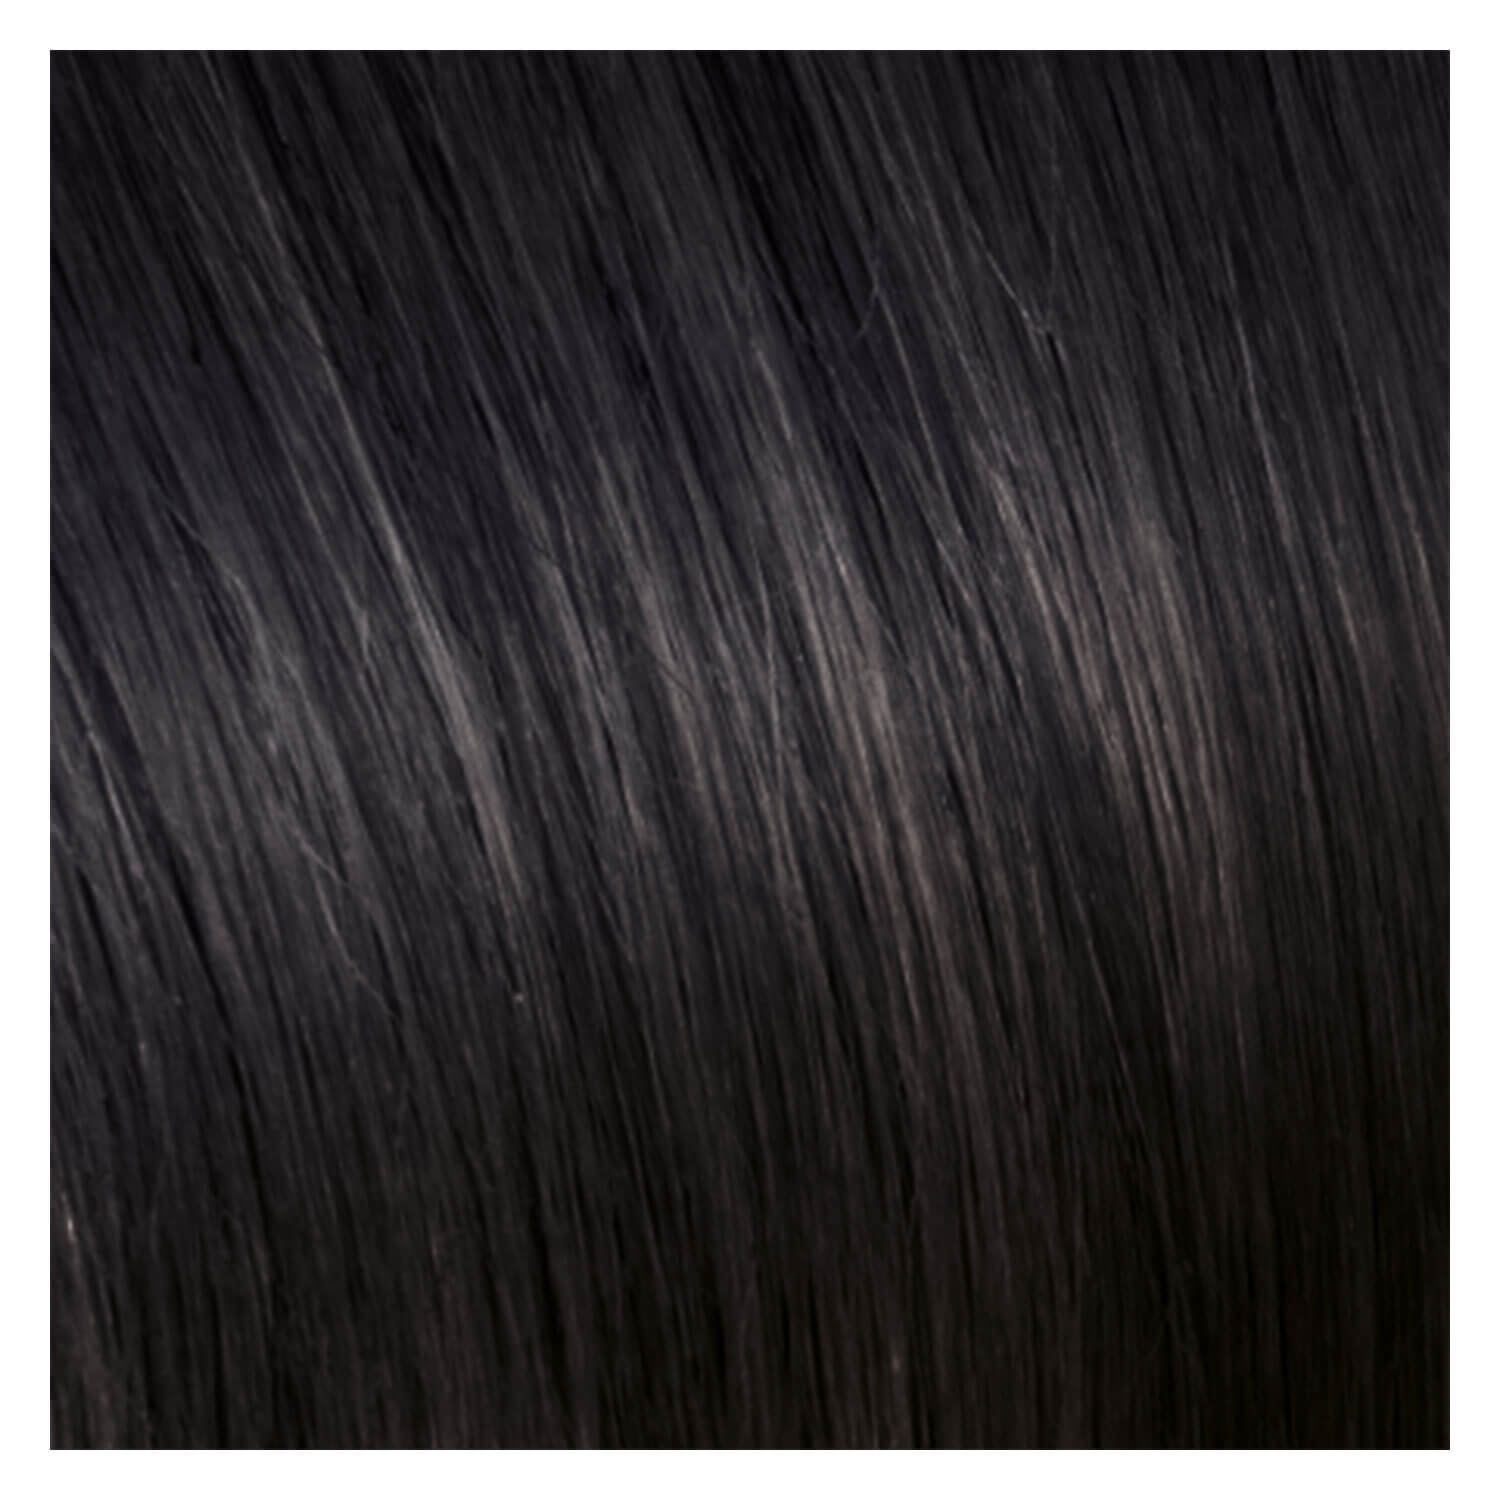 Produktbild von SHE Bonding-System Hair Extensions Wavy - 2 Dunkles Kastanienbraun 55/60cm